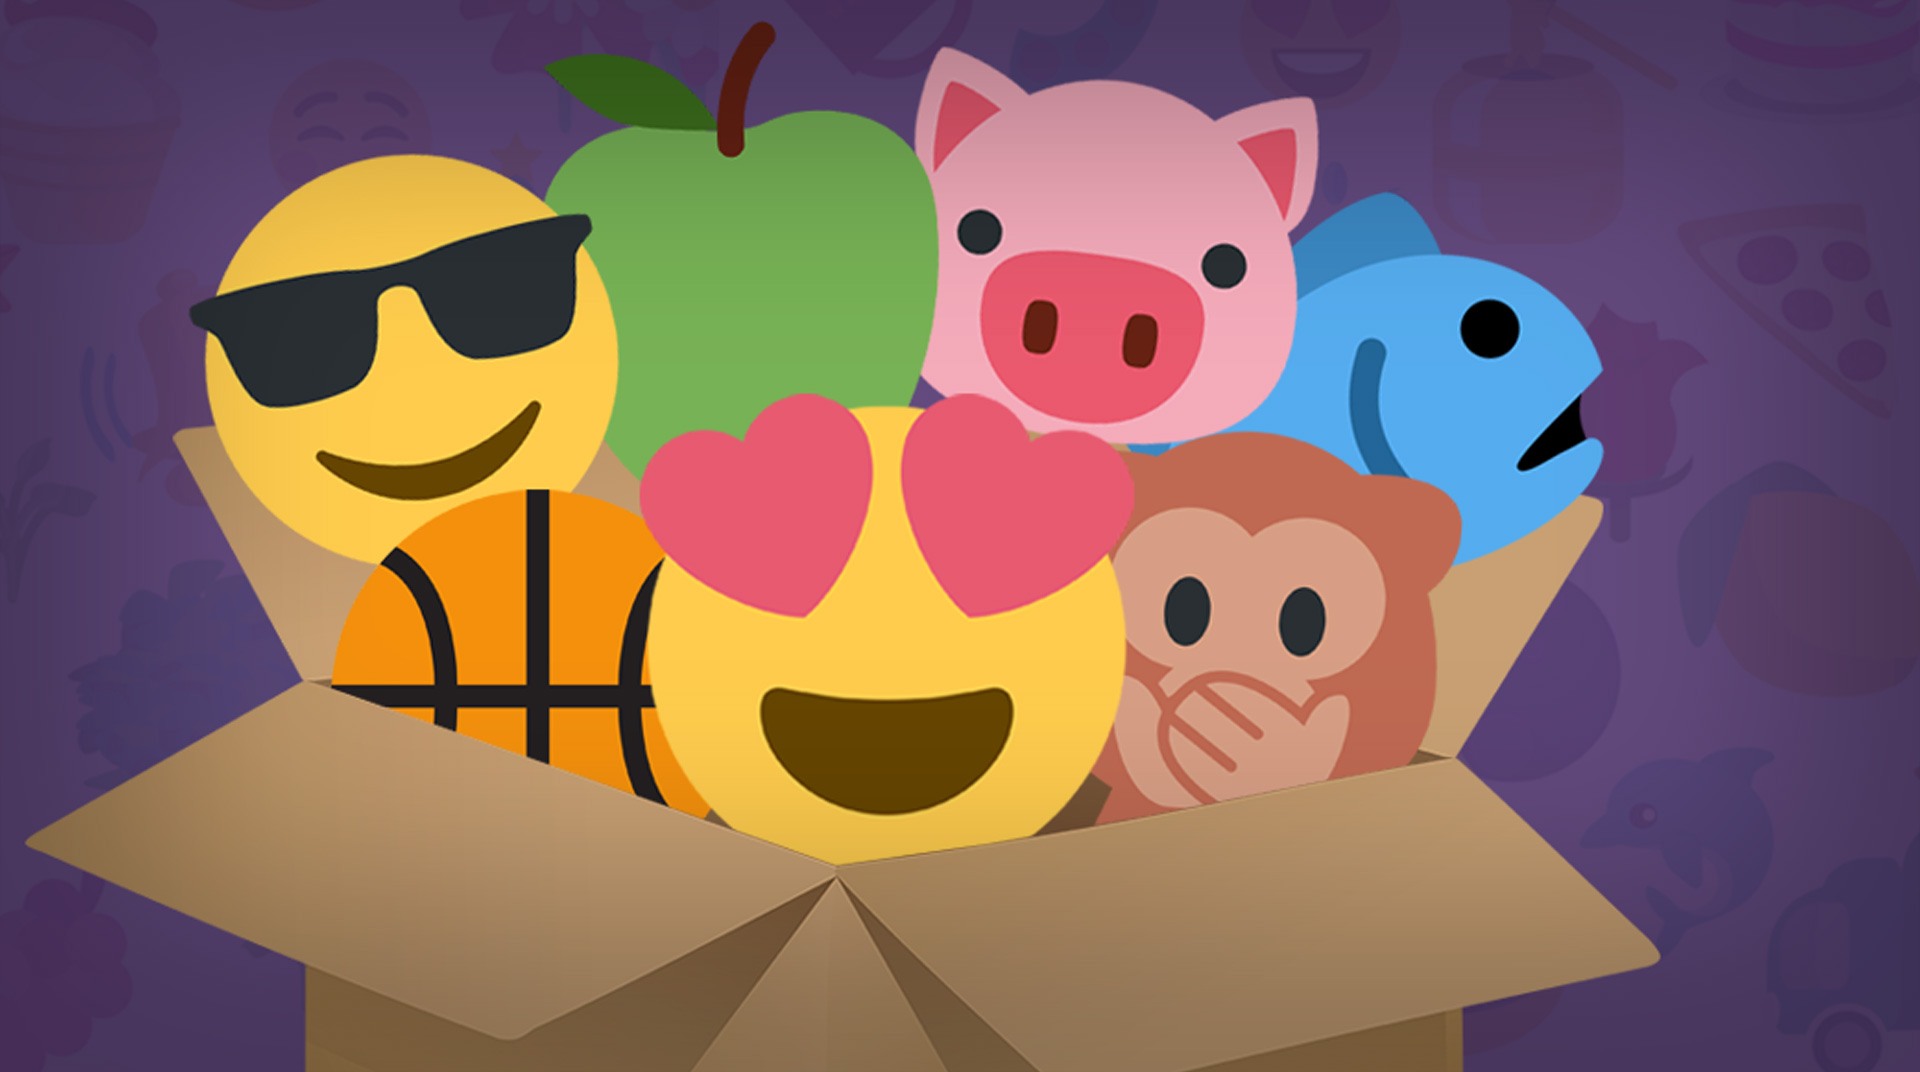 Emoji Quiz. Combine & Guess the Emoji!